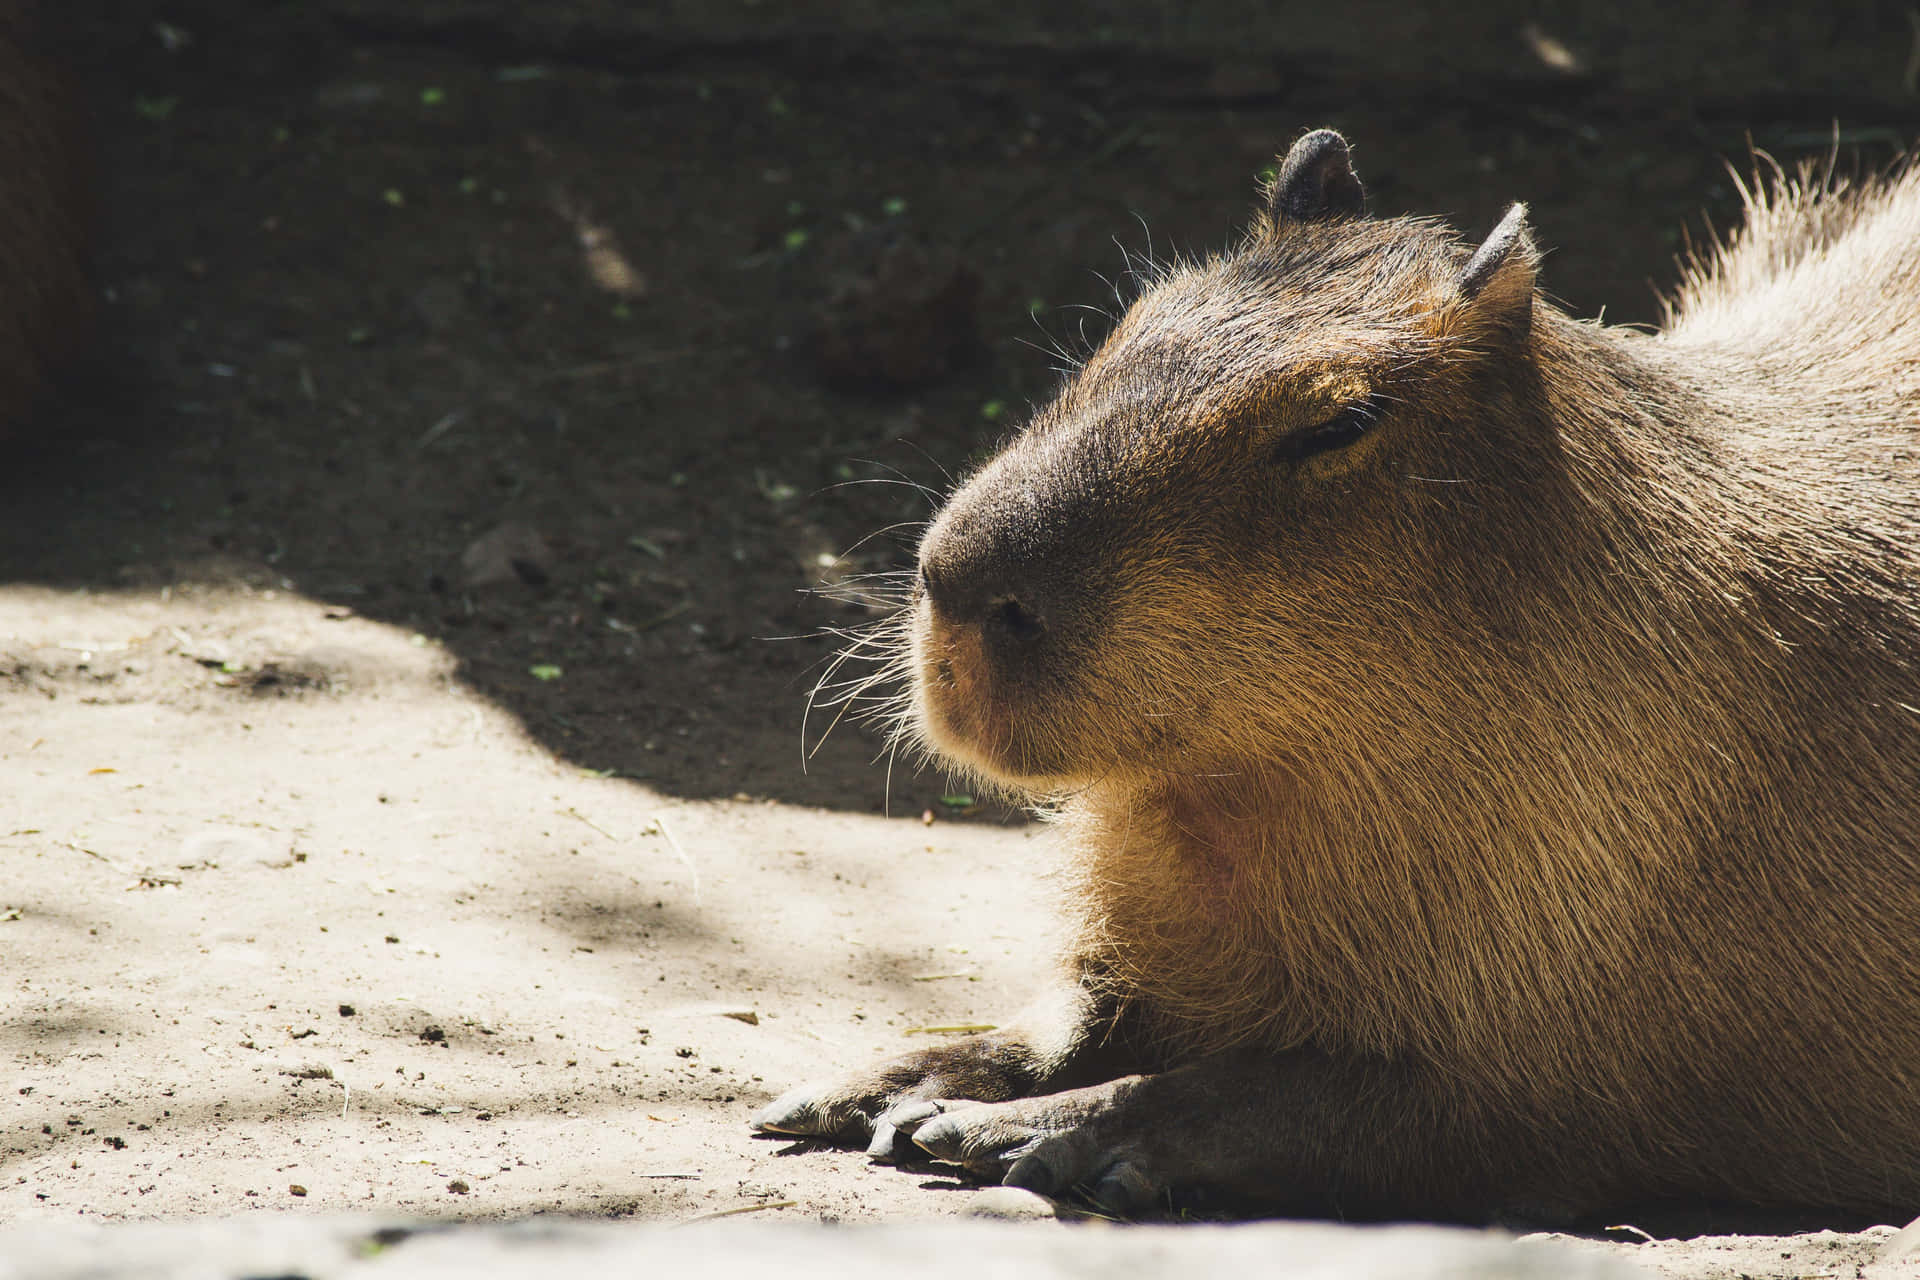 Encapybara Ligger Ned.